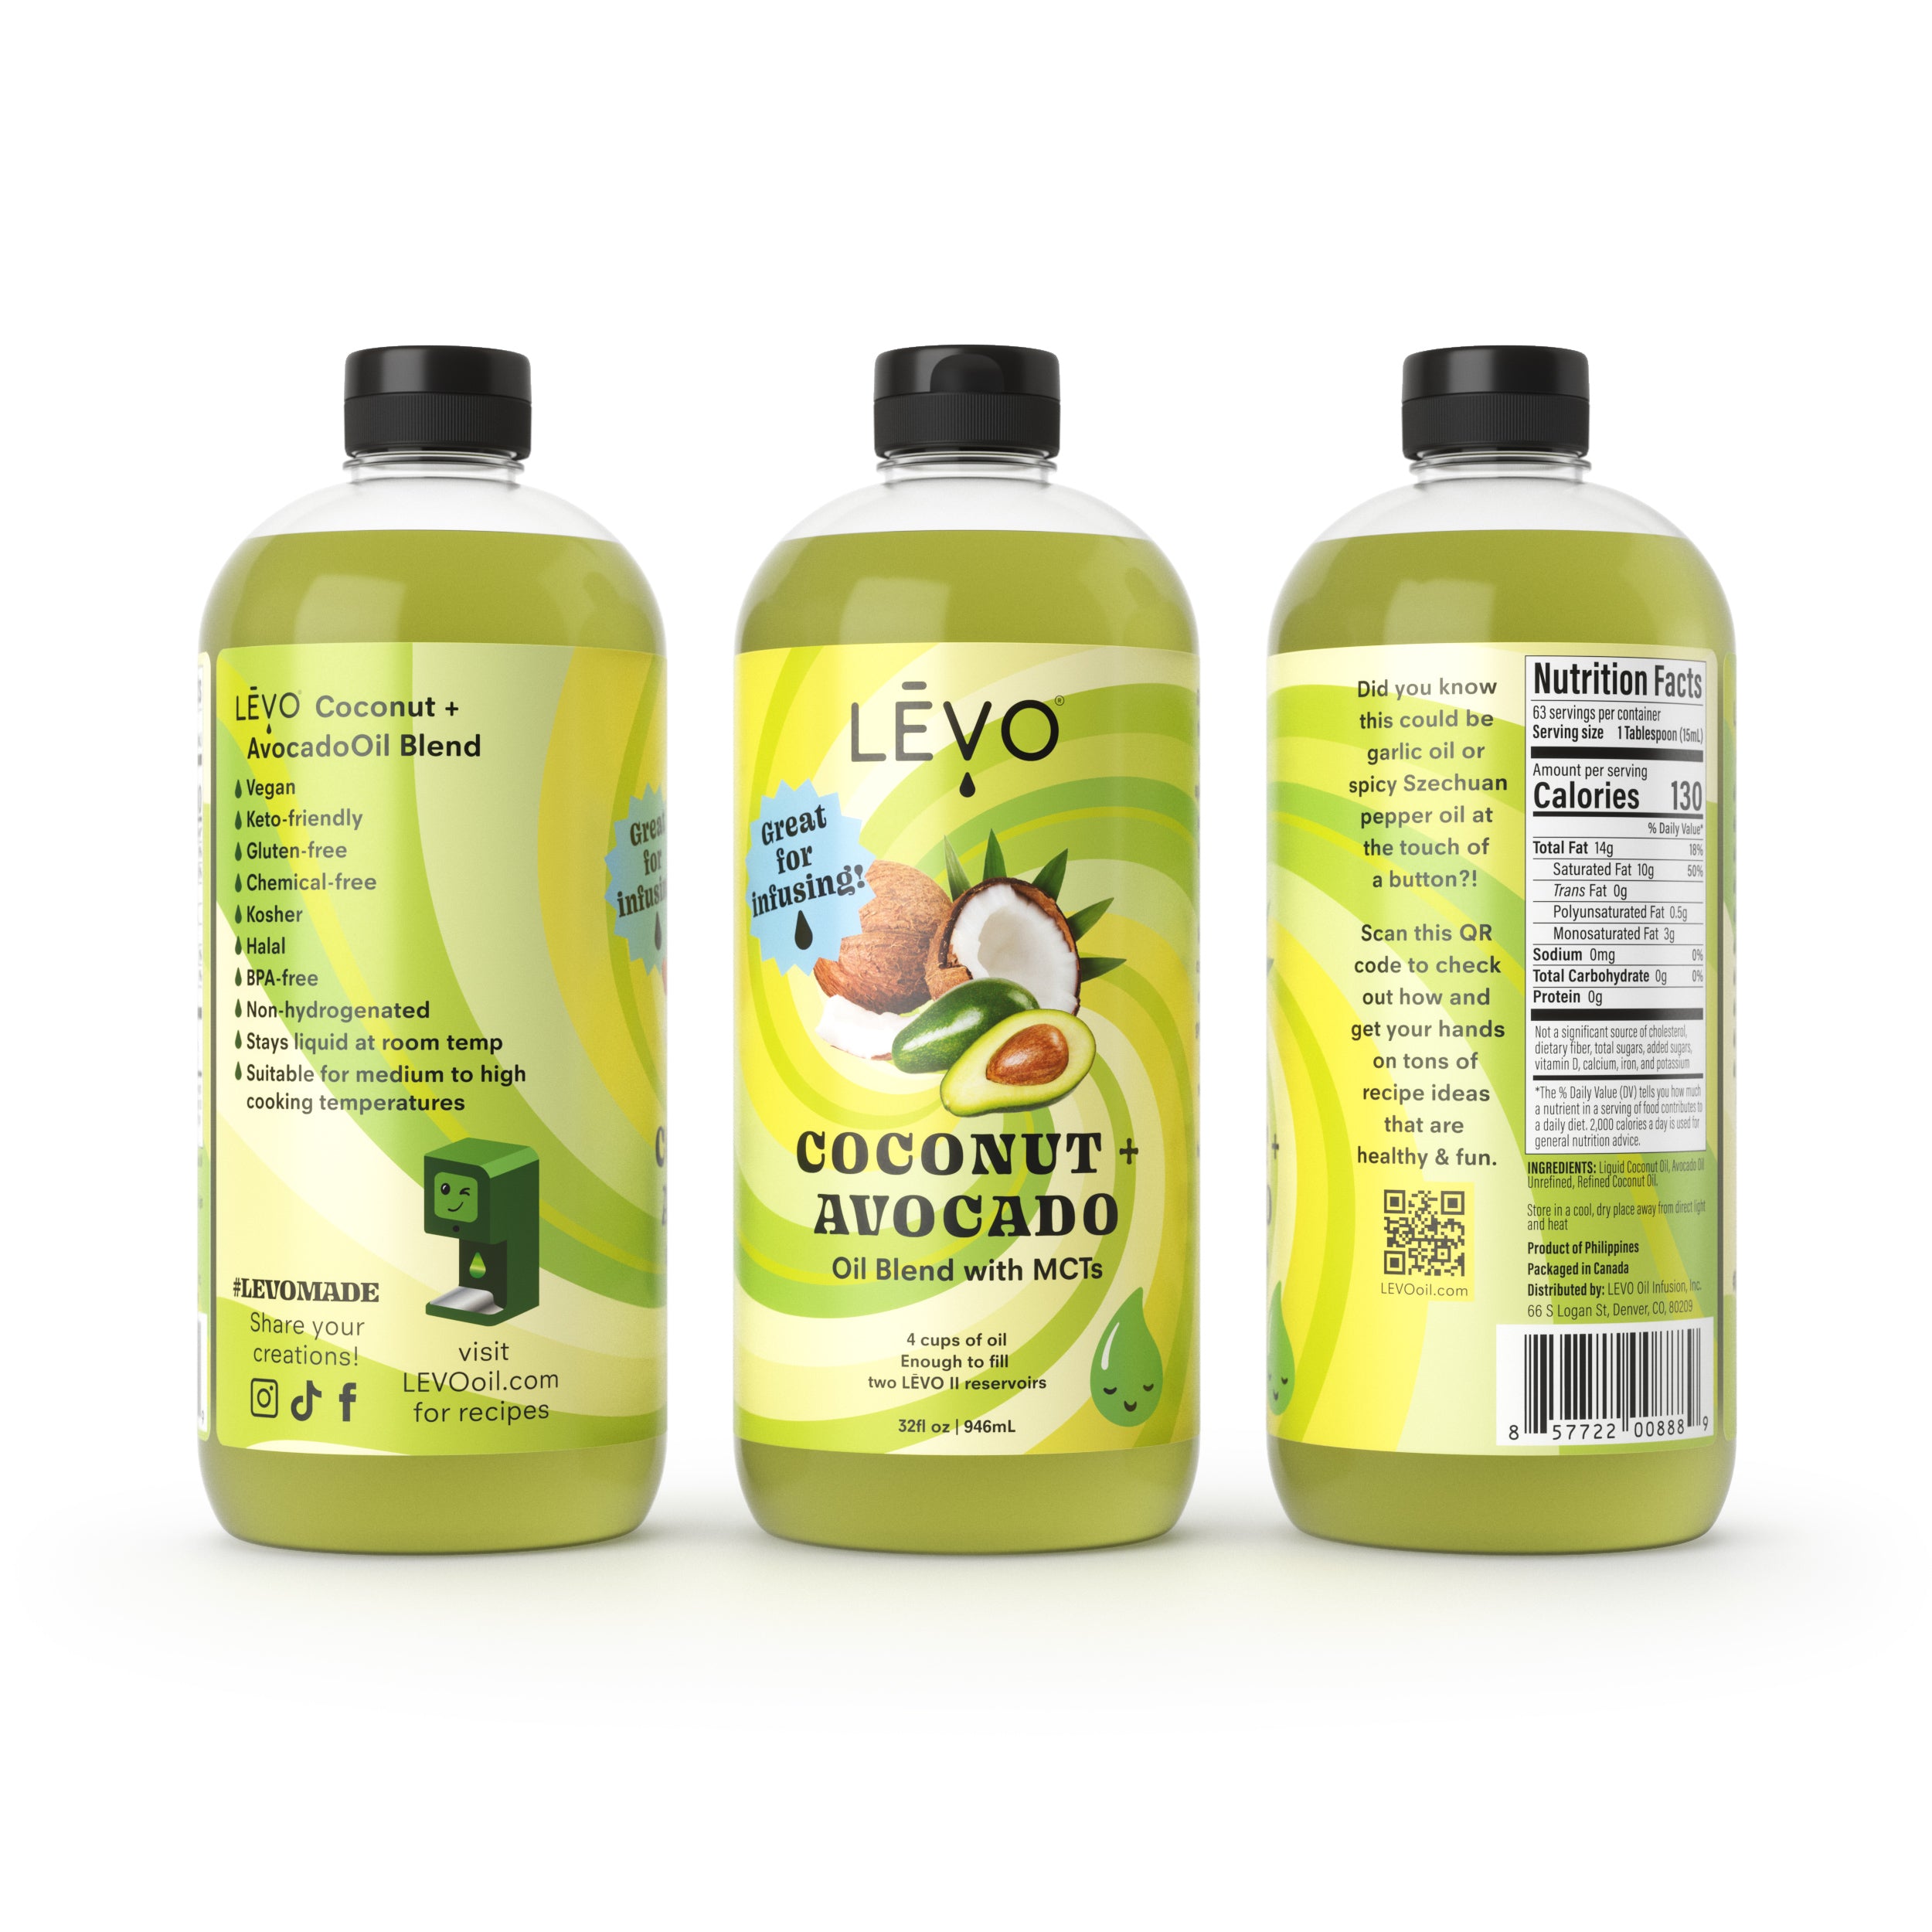 LEVO coconut avocado oil blend 32oz